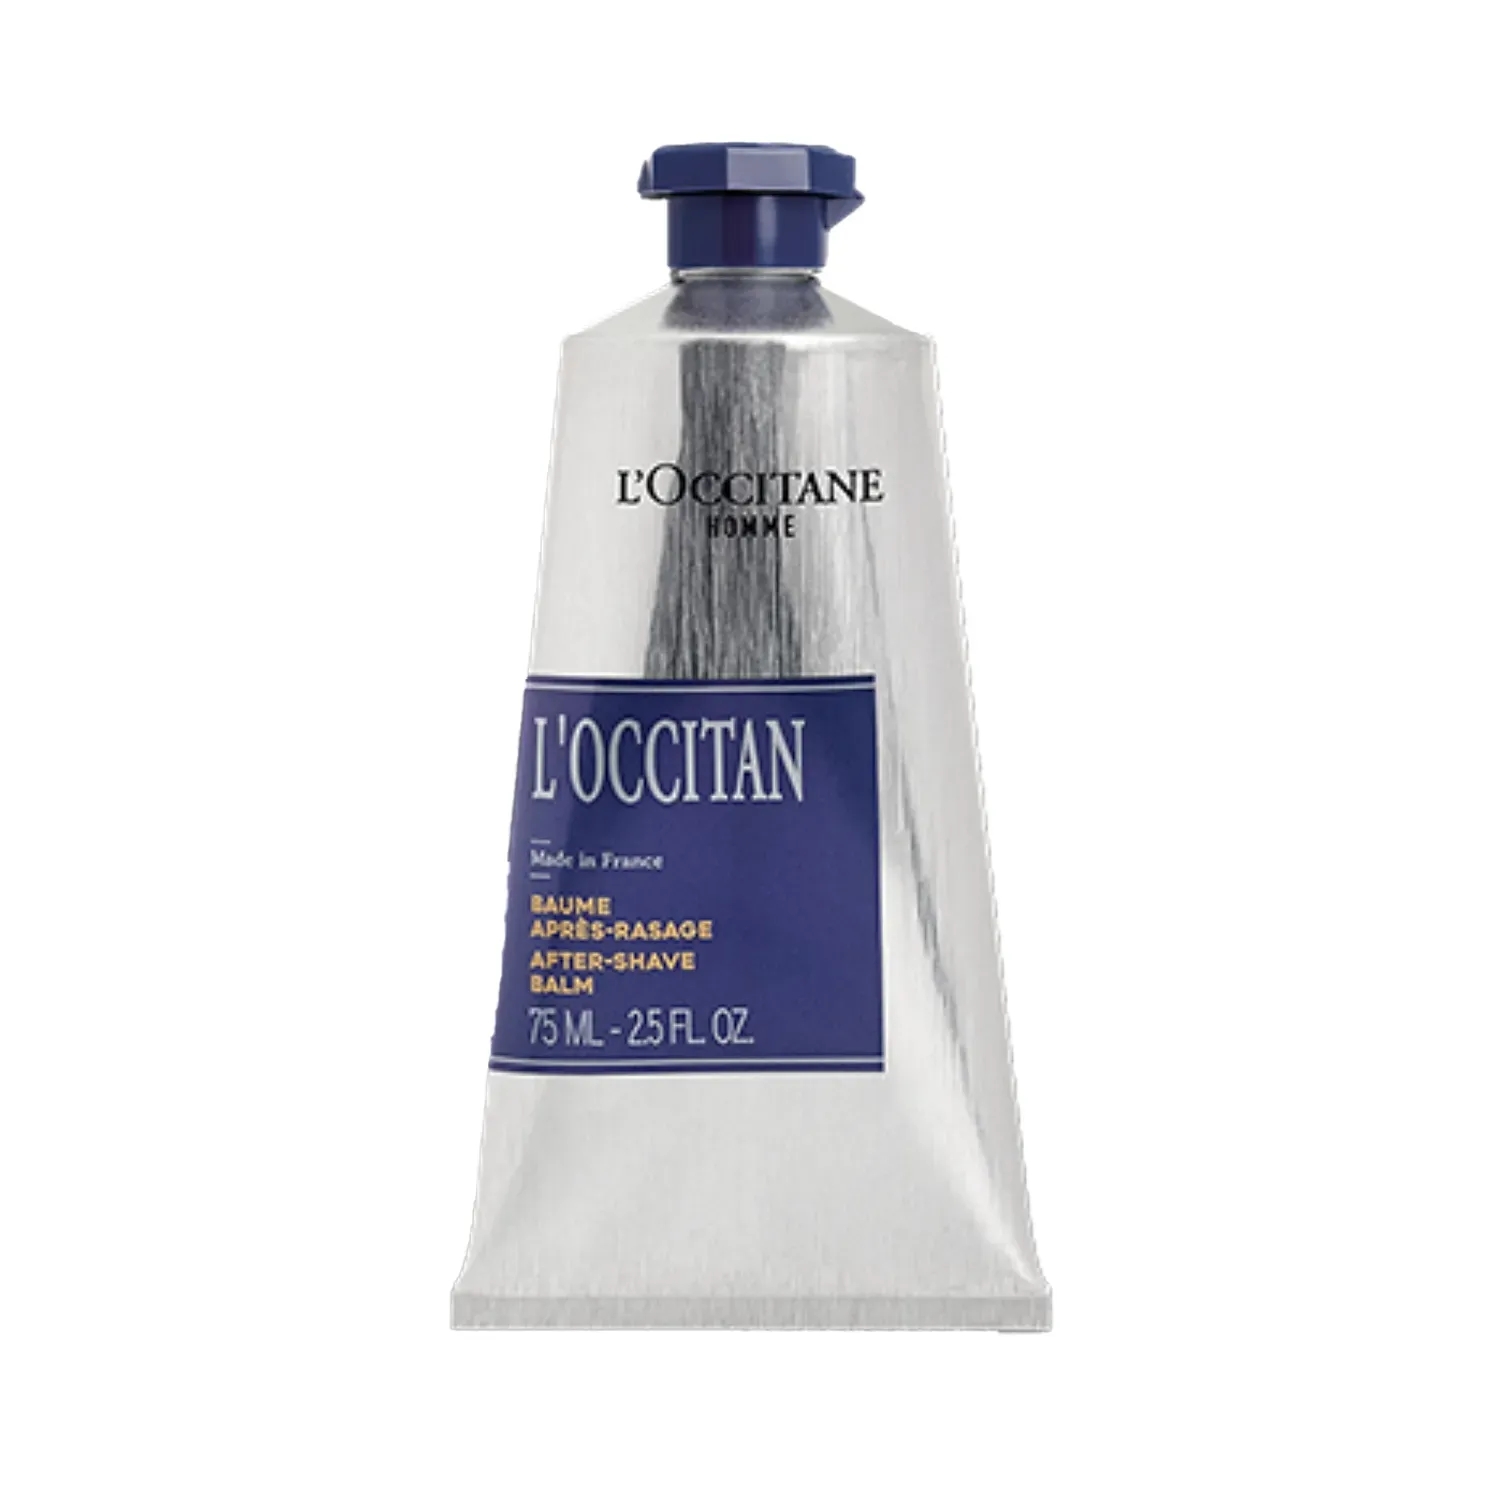 L'occitane | L'occitane After Shave Balm - (75ml)